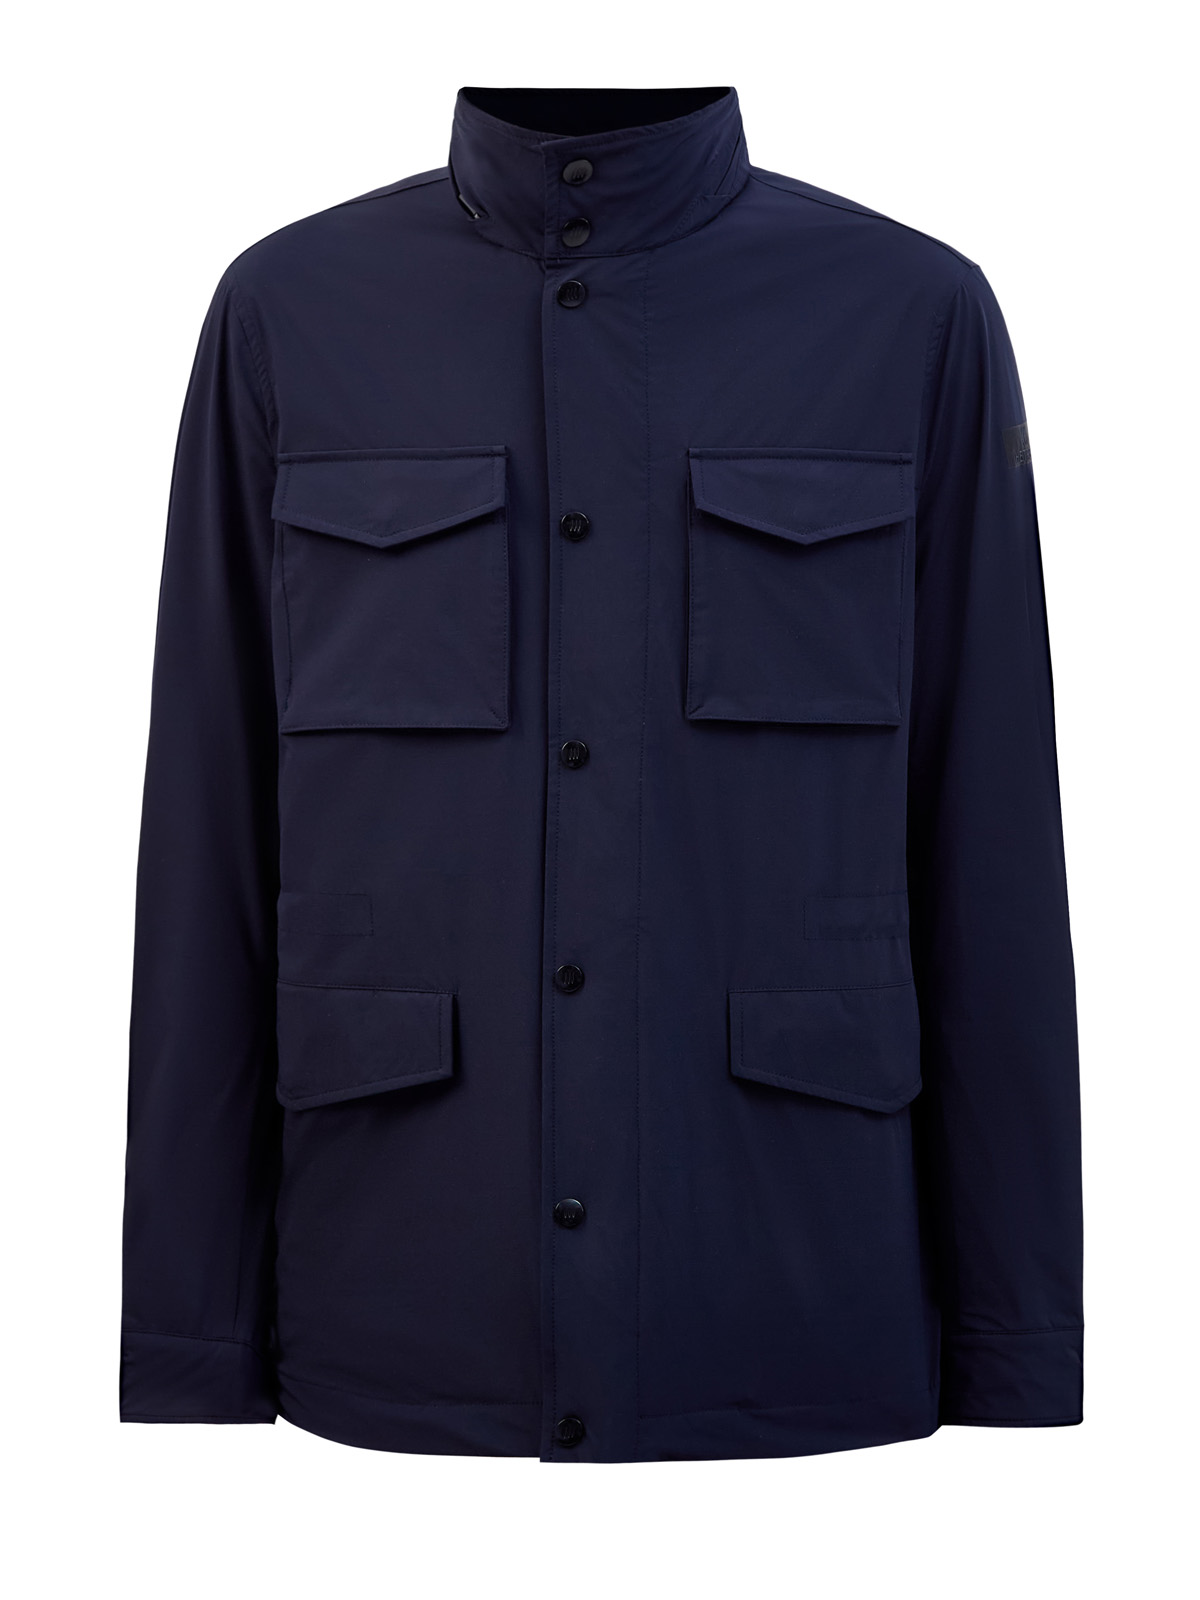 Куртка с потайным капюшоном на молнии и накладными карманами HETREGO, цвет синий, размер L;XL;2XL;3XL;4XL